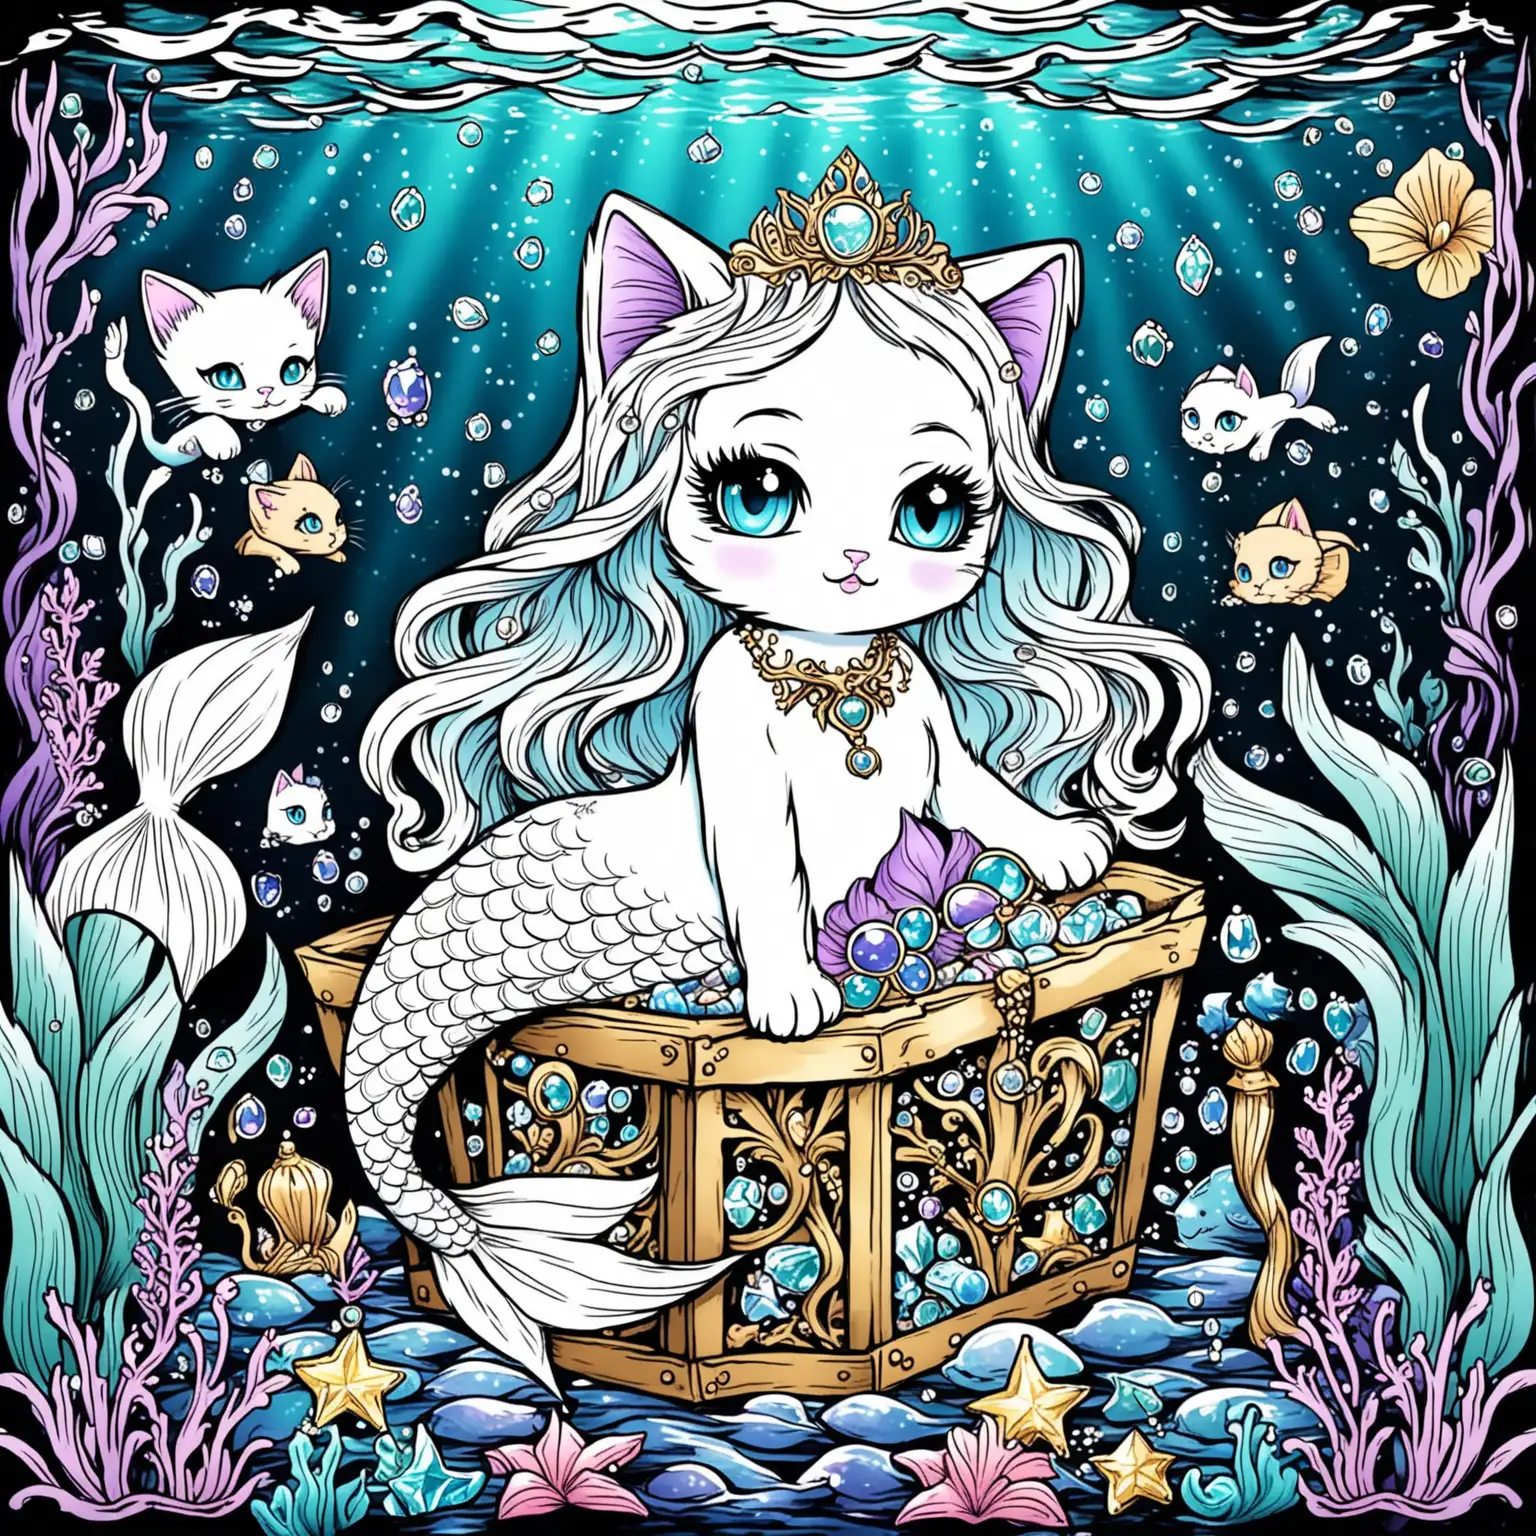 Mermaid Kitten Coloring Page in Treasure Underwater Scene